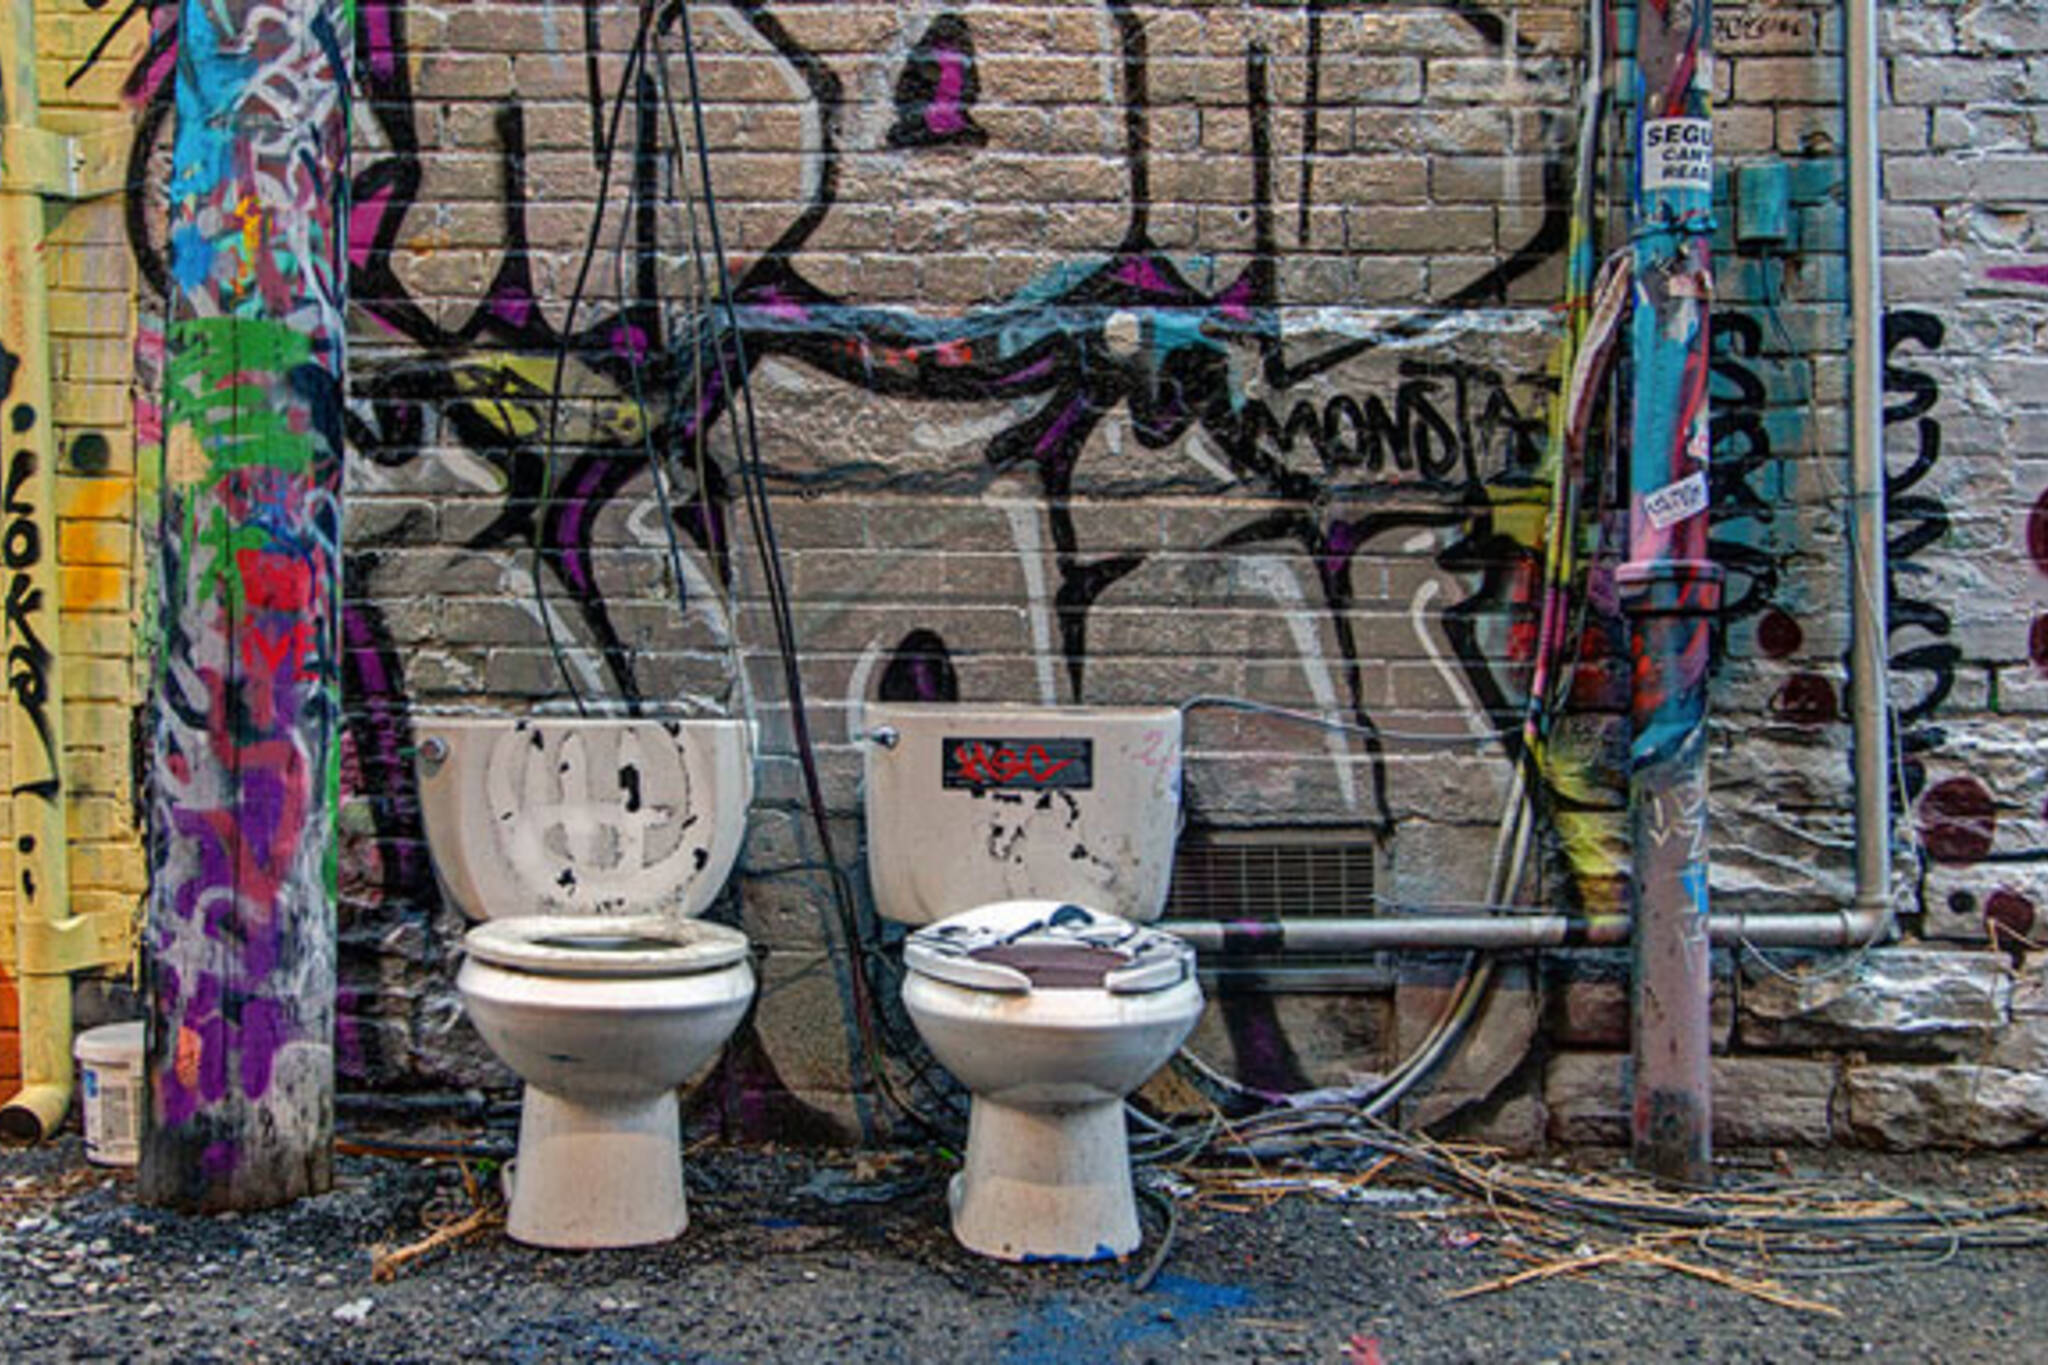 toronto toilets